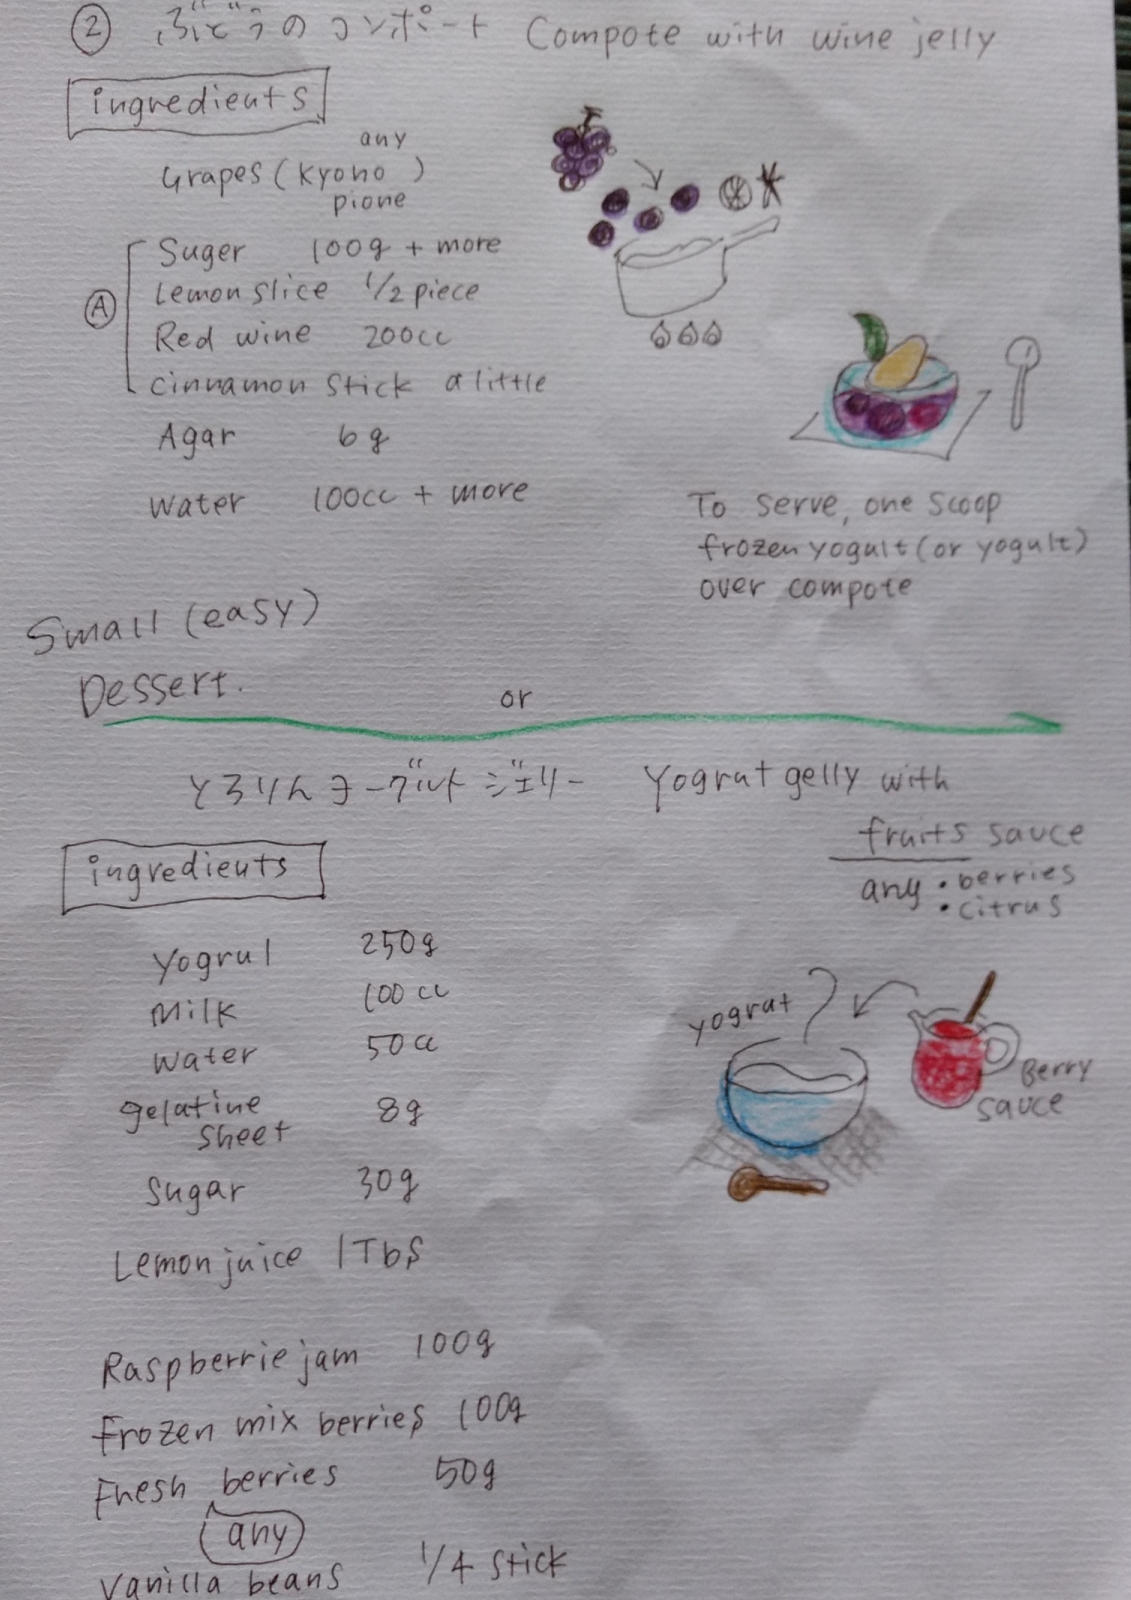 シンガポールのクッキングスクールで提案したレシピ。(具志堅さん提供)